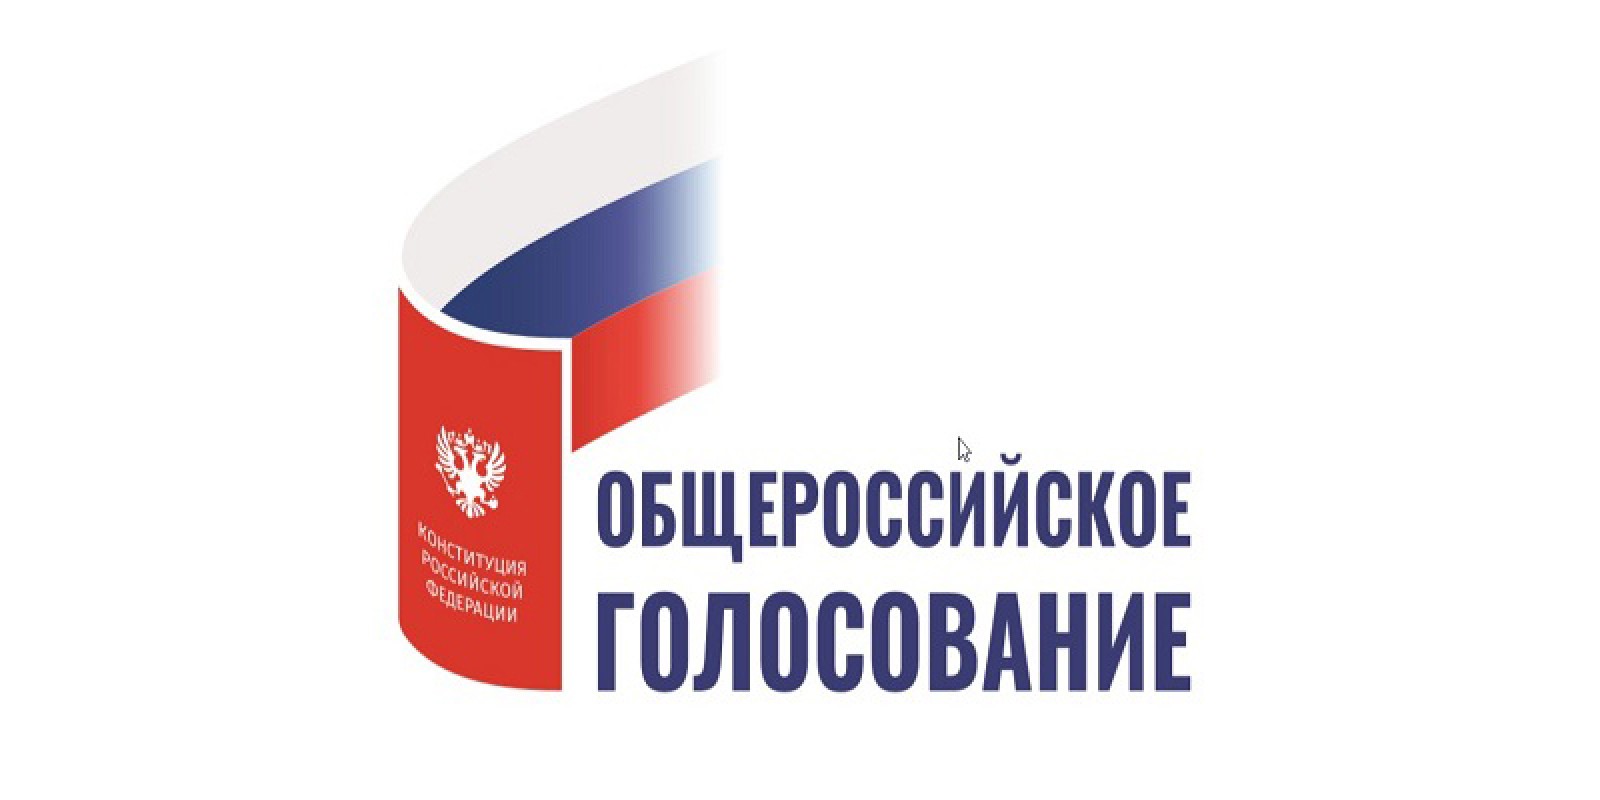 Как принять участие в общероссийском голосовании по поправкам к Конституции РФ